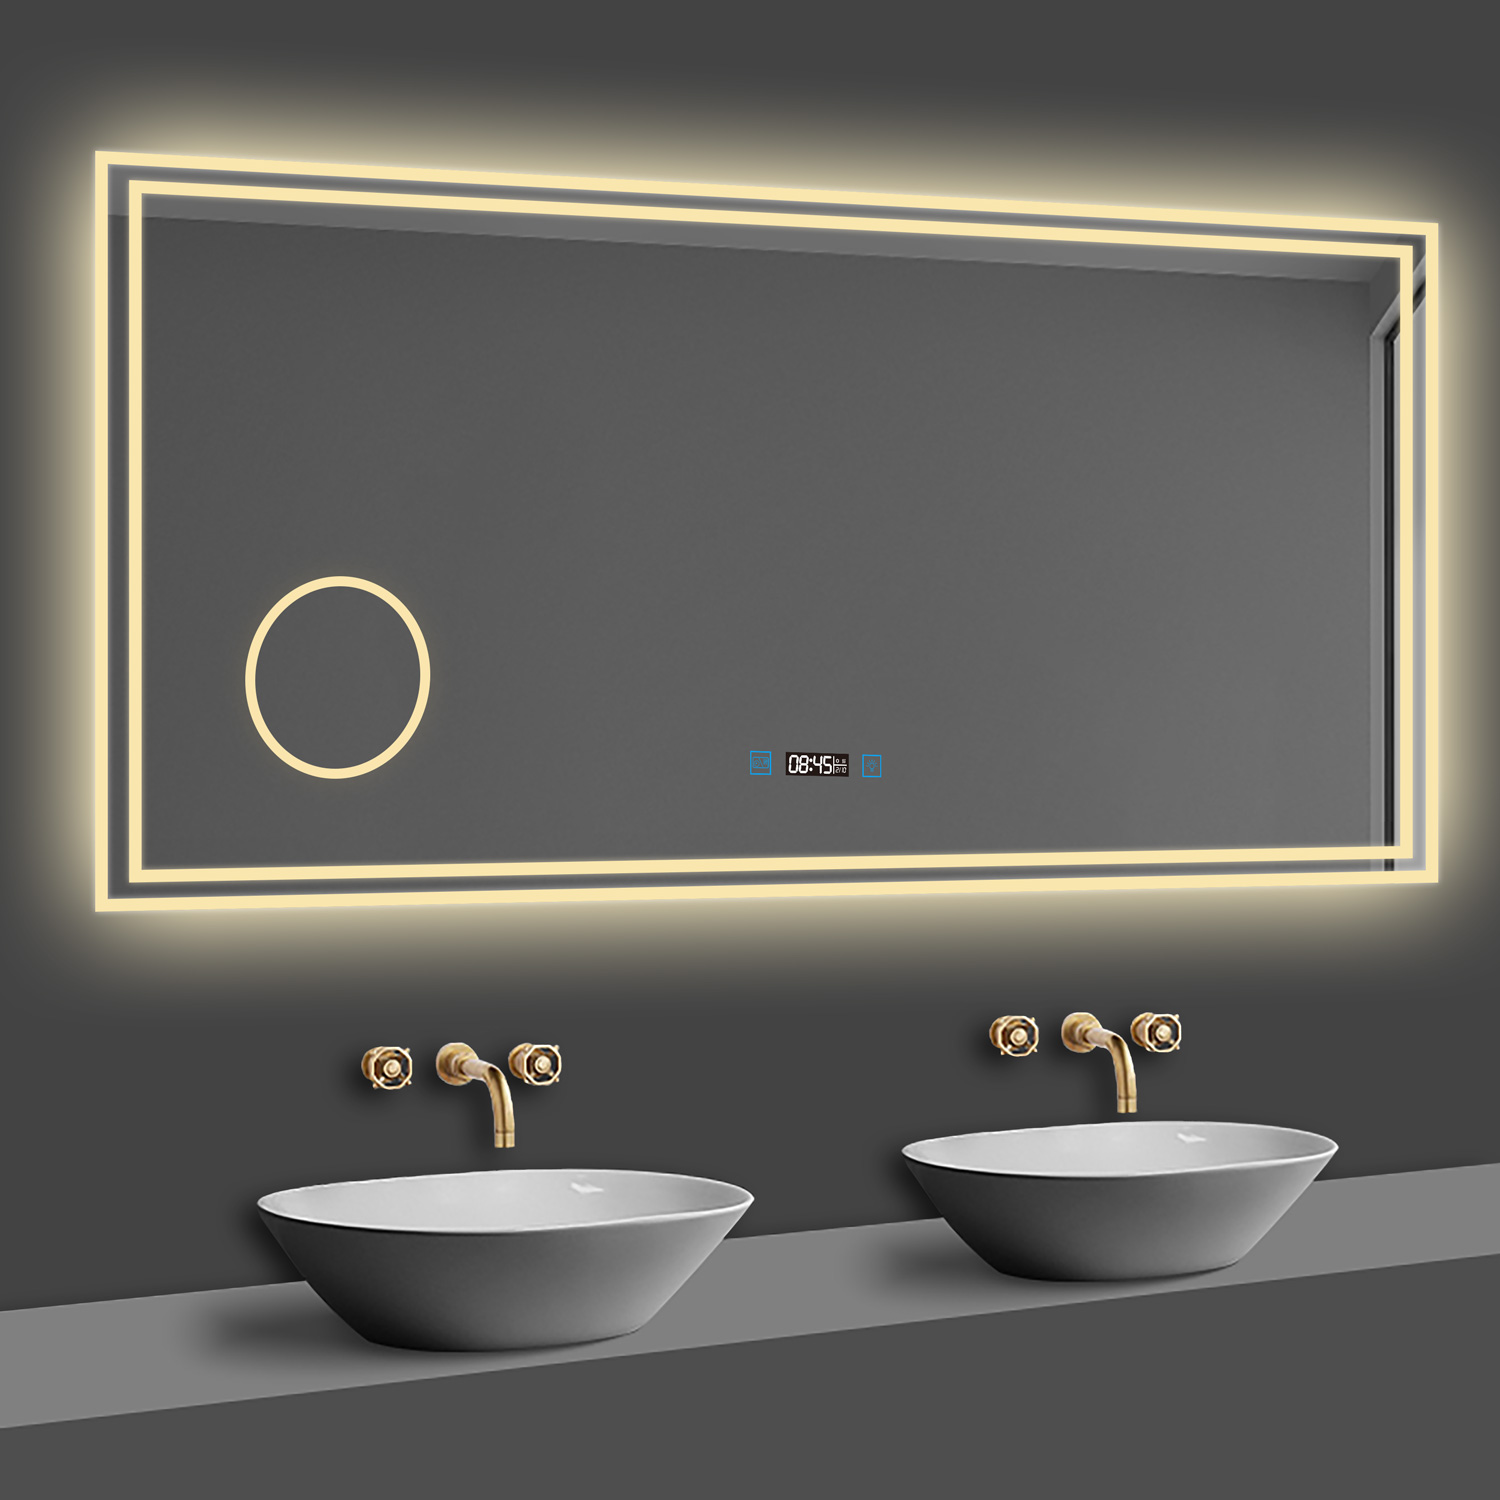 LED Badspiegel 80×60cm Uhr, Touch, Beschlagfrei, 3 Lichtfarbe 2700-6500K ,3x Lupe,Dimmbar,Wandspiegel